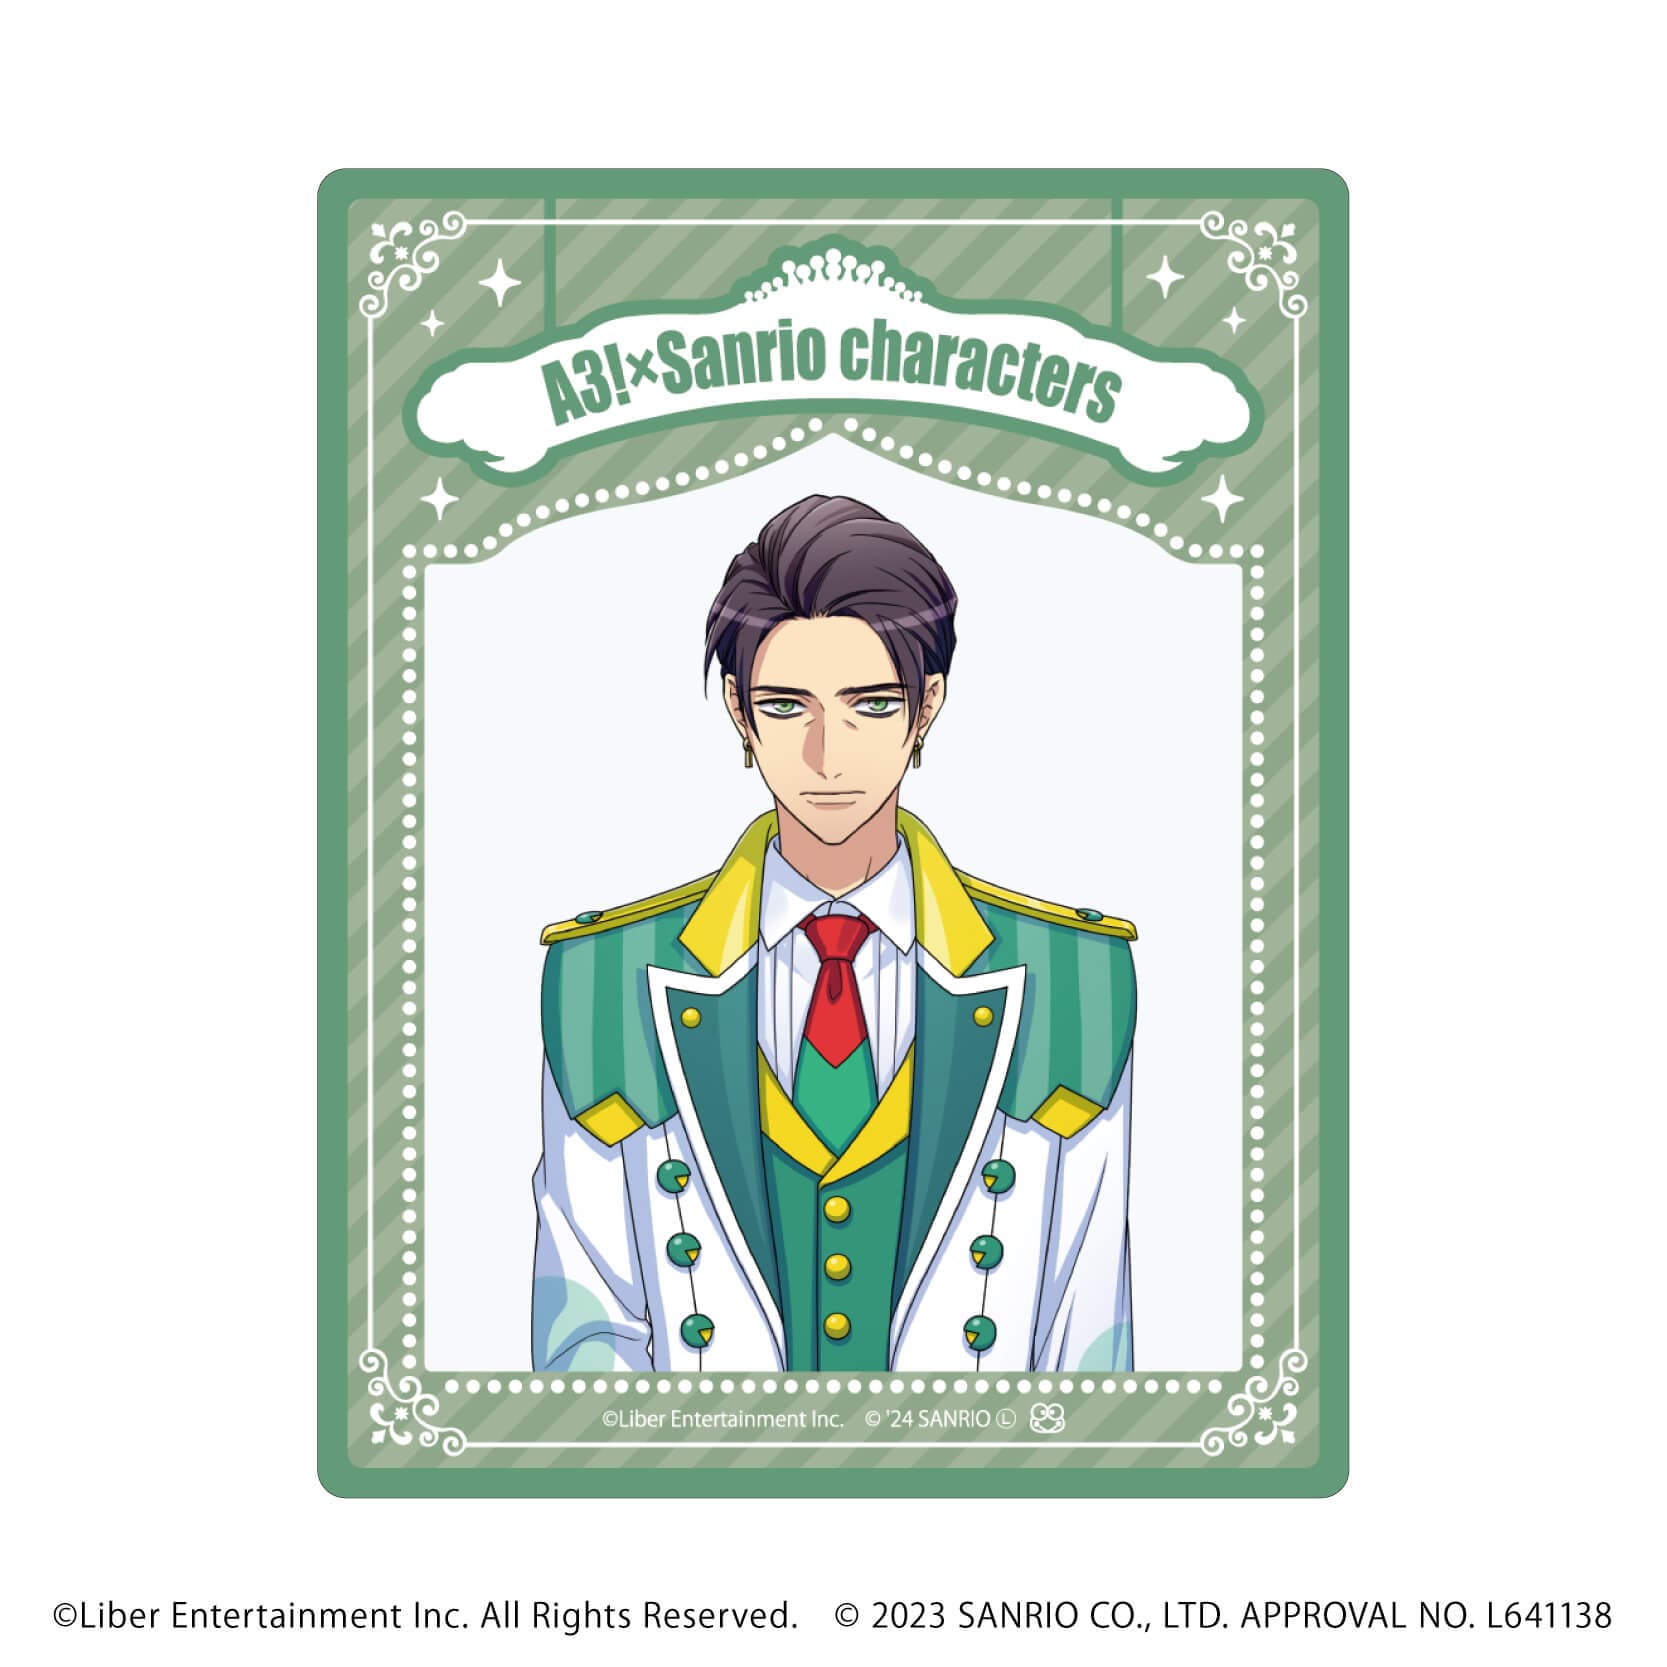 アクリルカード「A3!×Sanrio characters」08/A＆W コンプリートBOX(全12種)(公式イラスト)